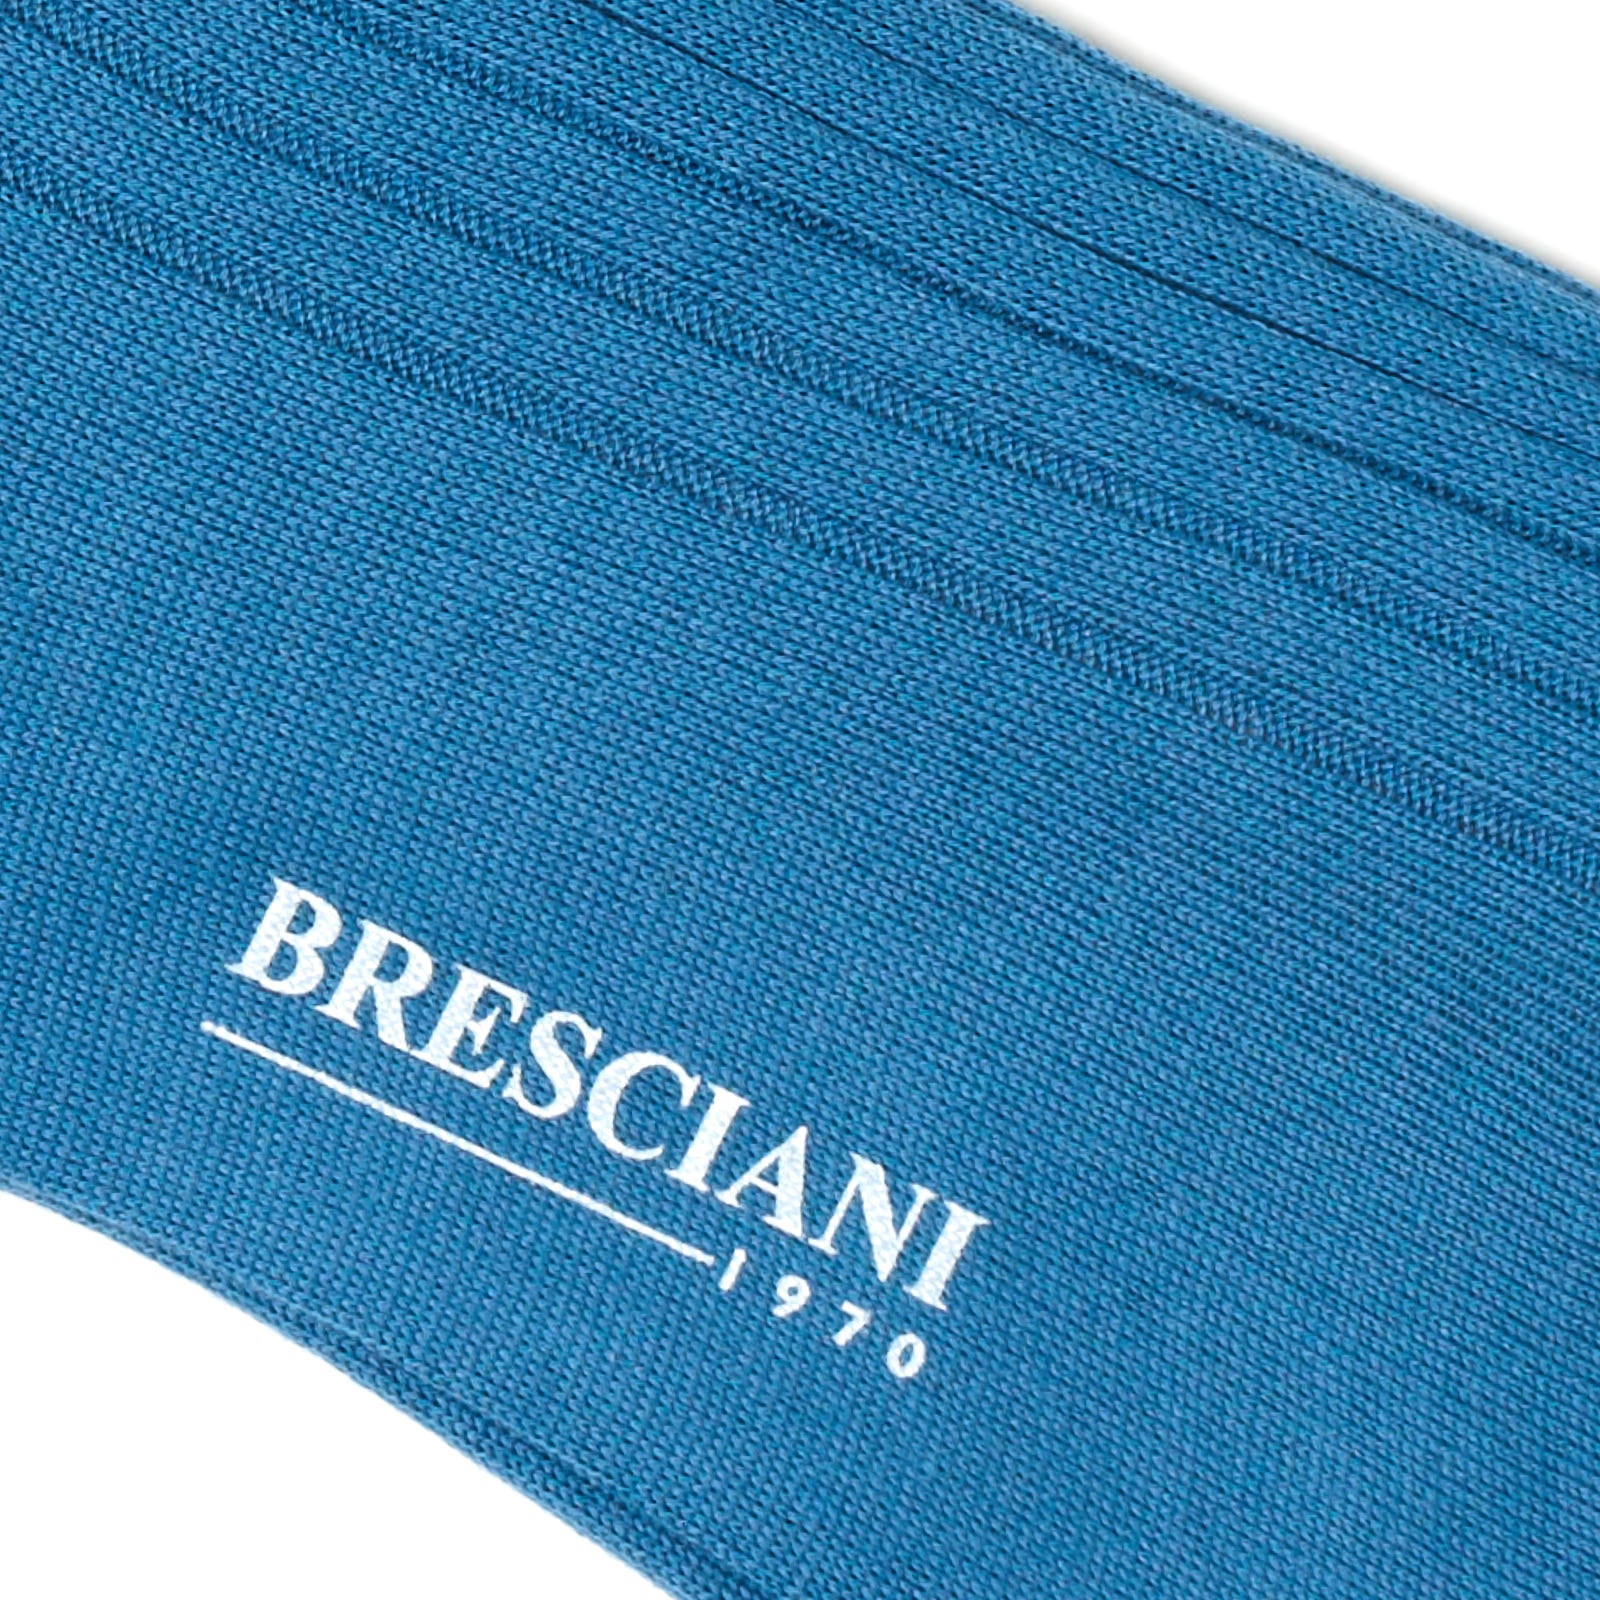 BRESCIANI "Marcello" Organic Cotton Mid Calf Socks US M-L BRESCIANI